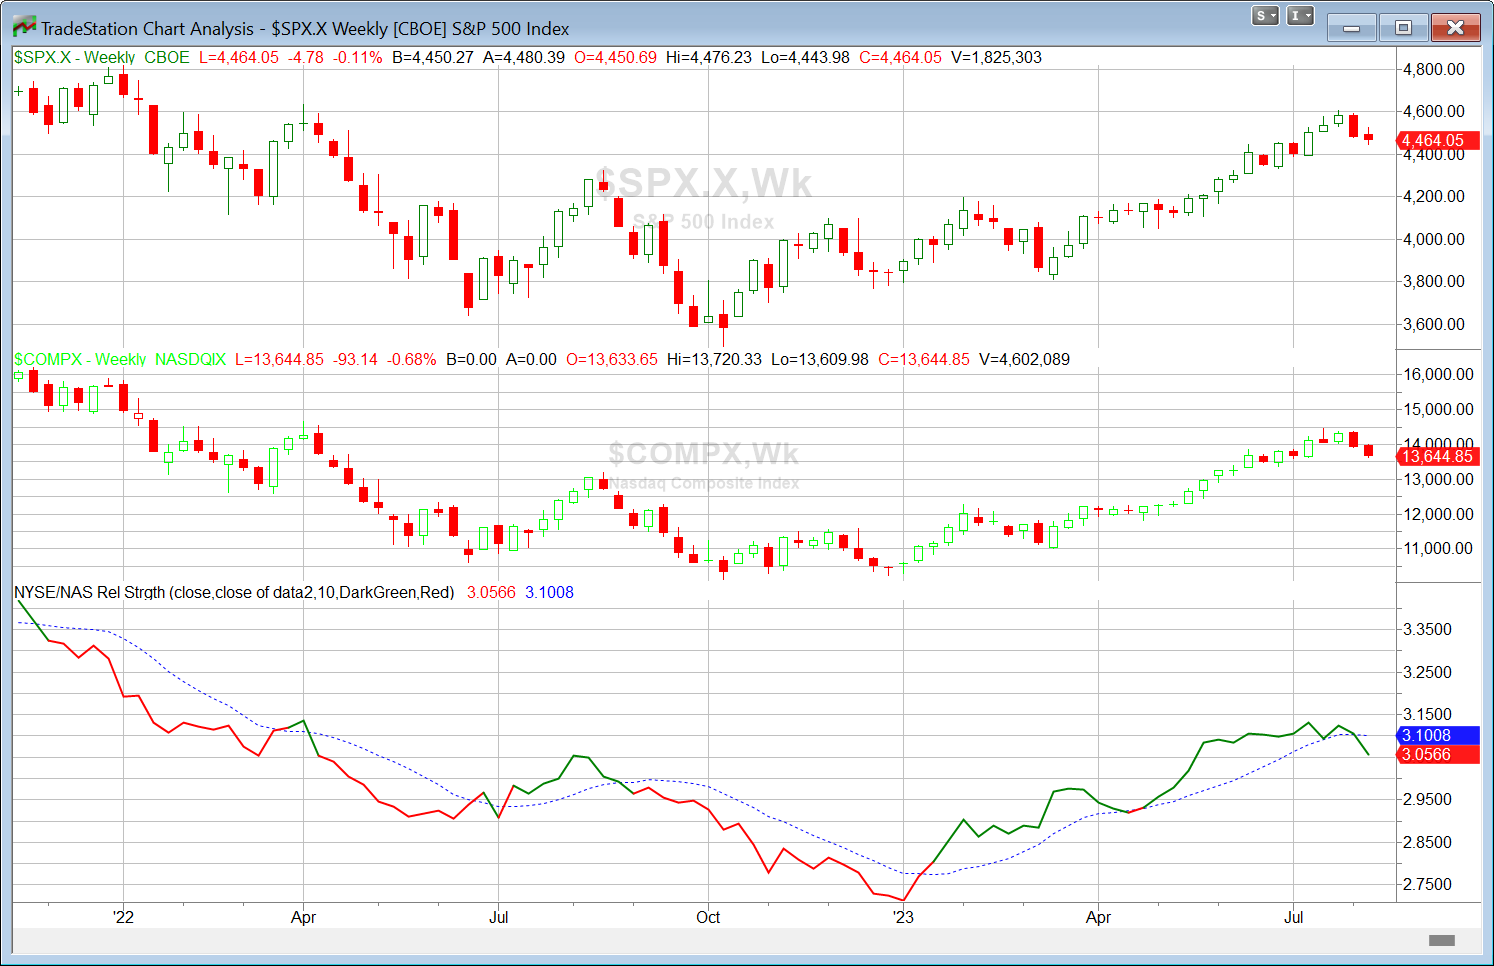 NASDAQ/SPX Relative Strength shows NASDAQ faltering now